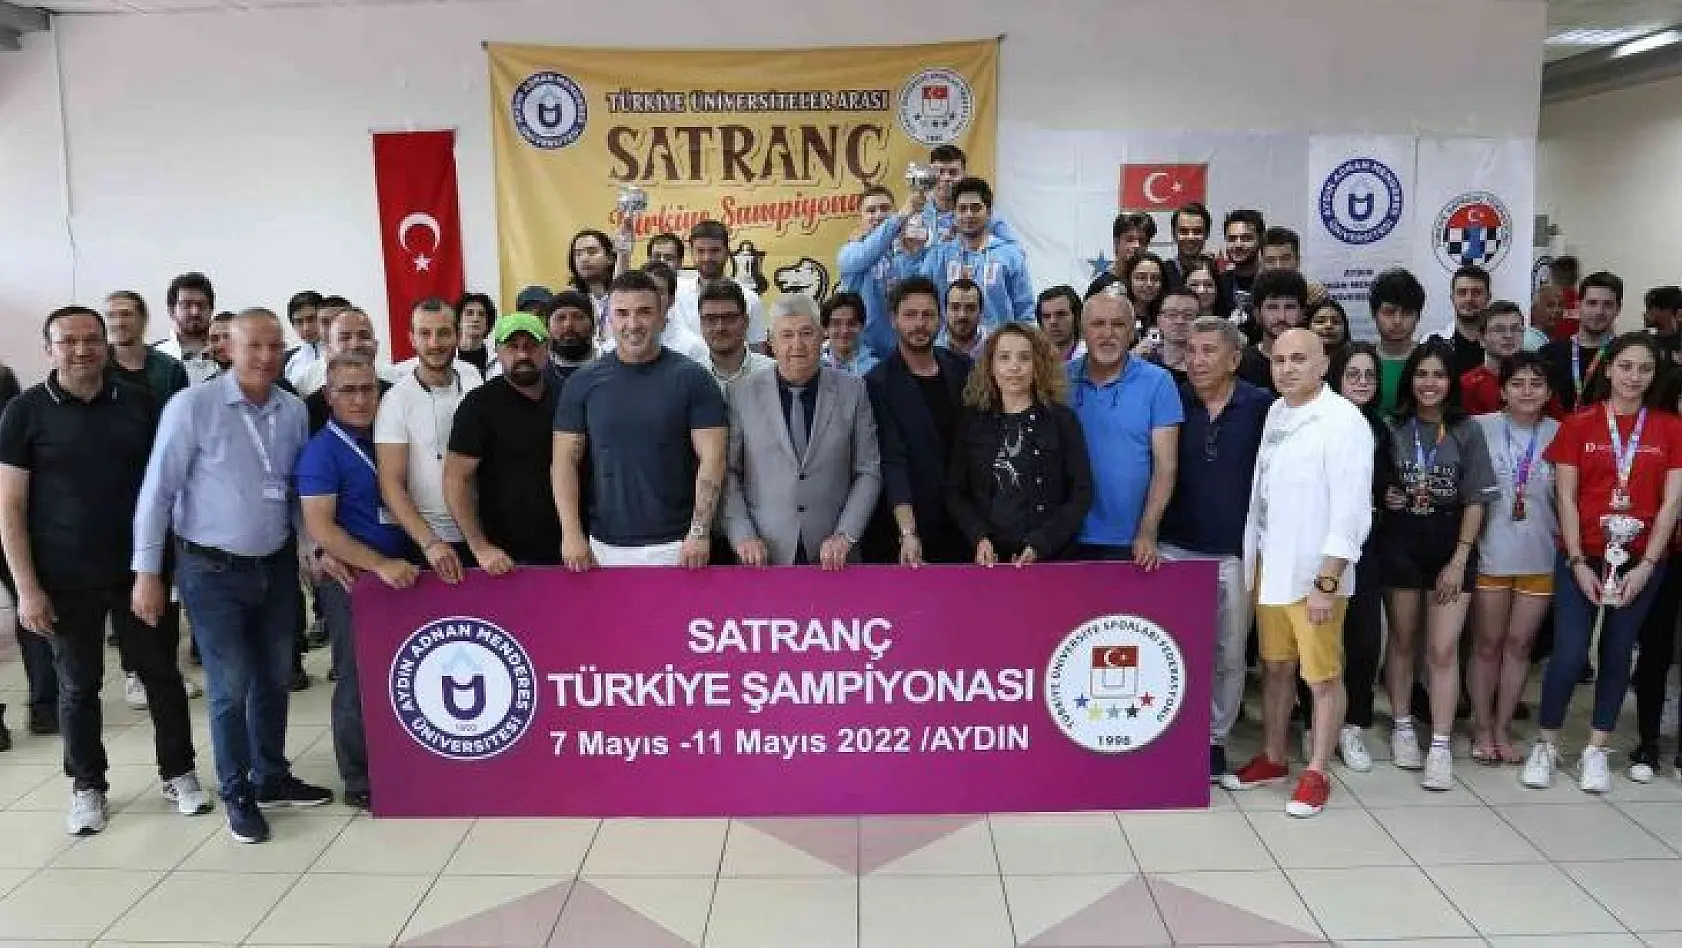 Türkiye Üniversiteler Arası Satranç Şampiyonası sona erdi